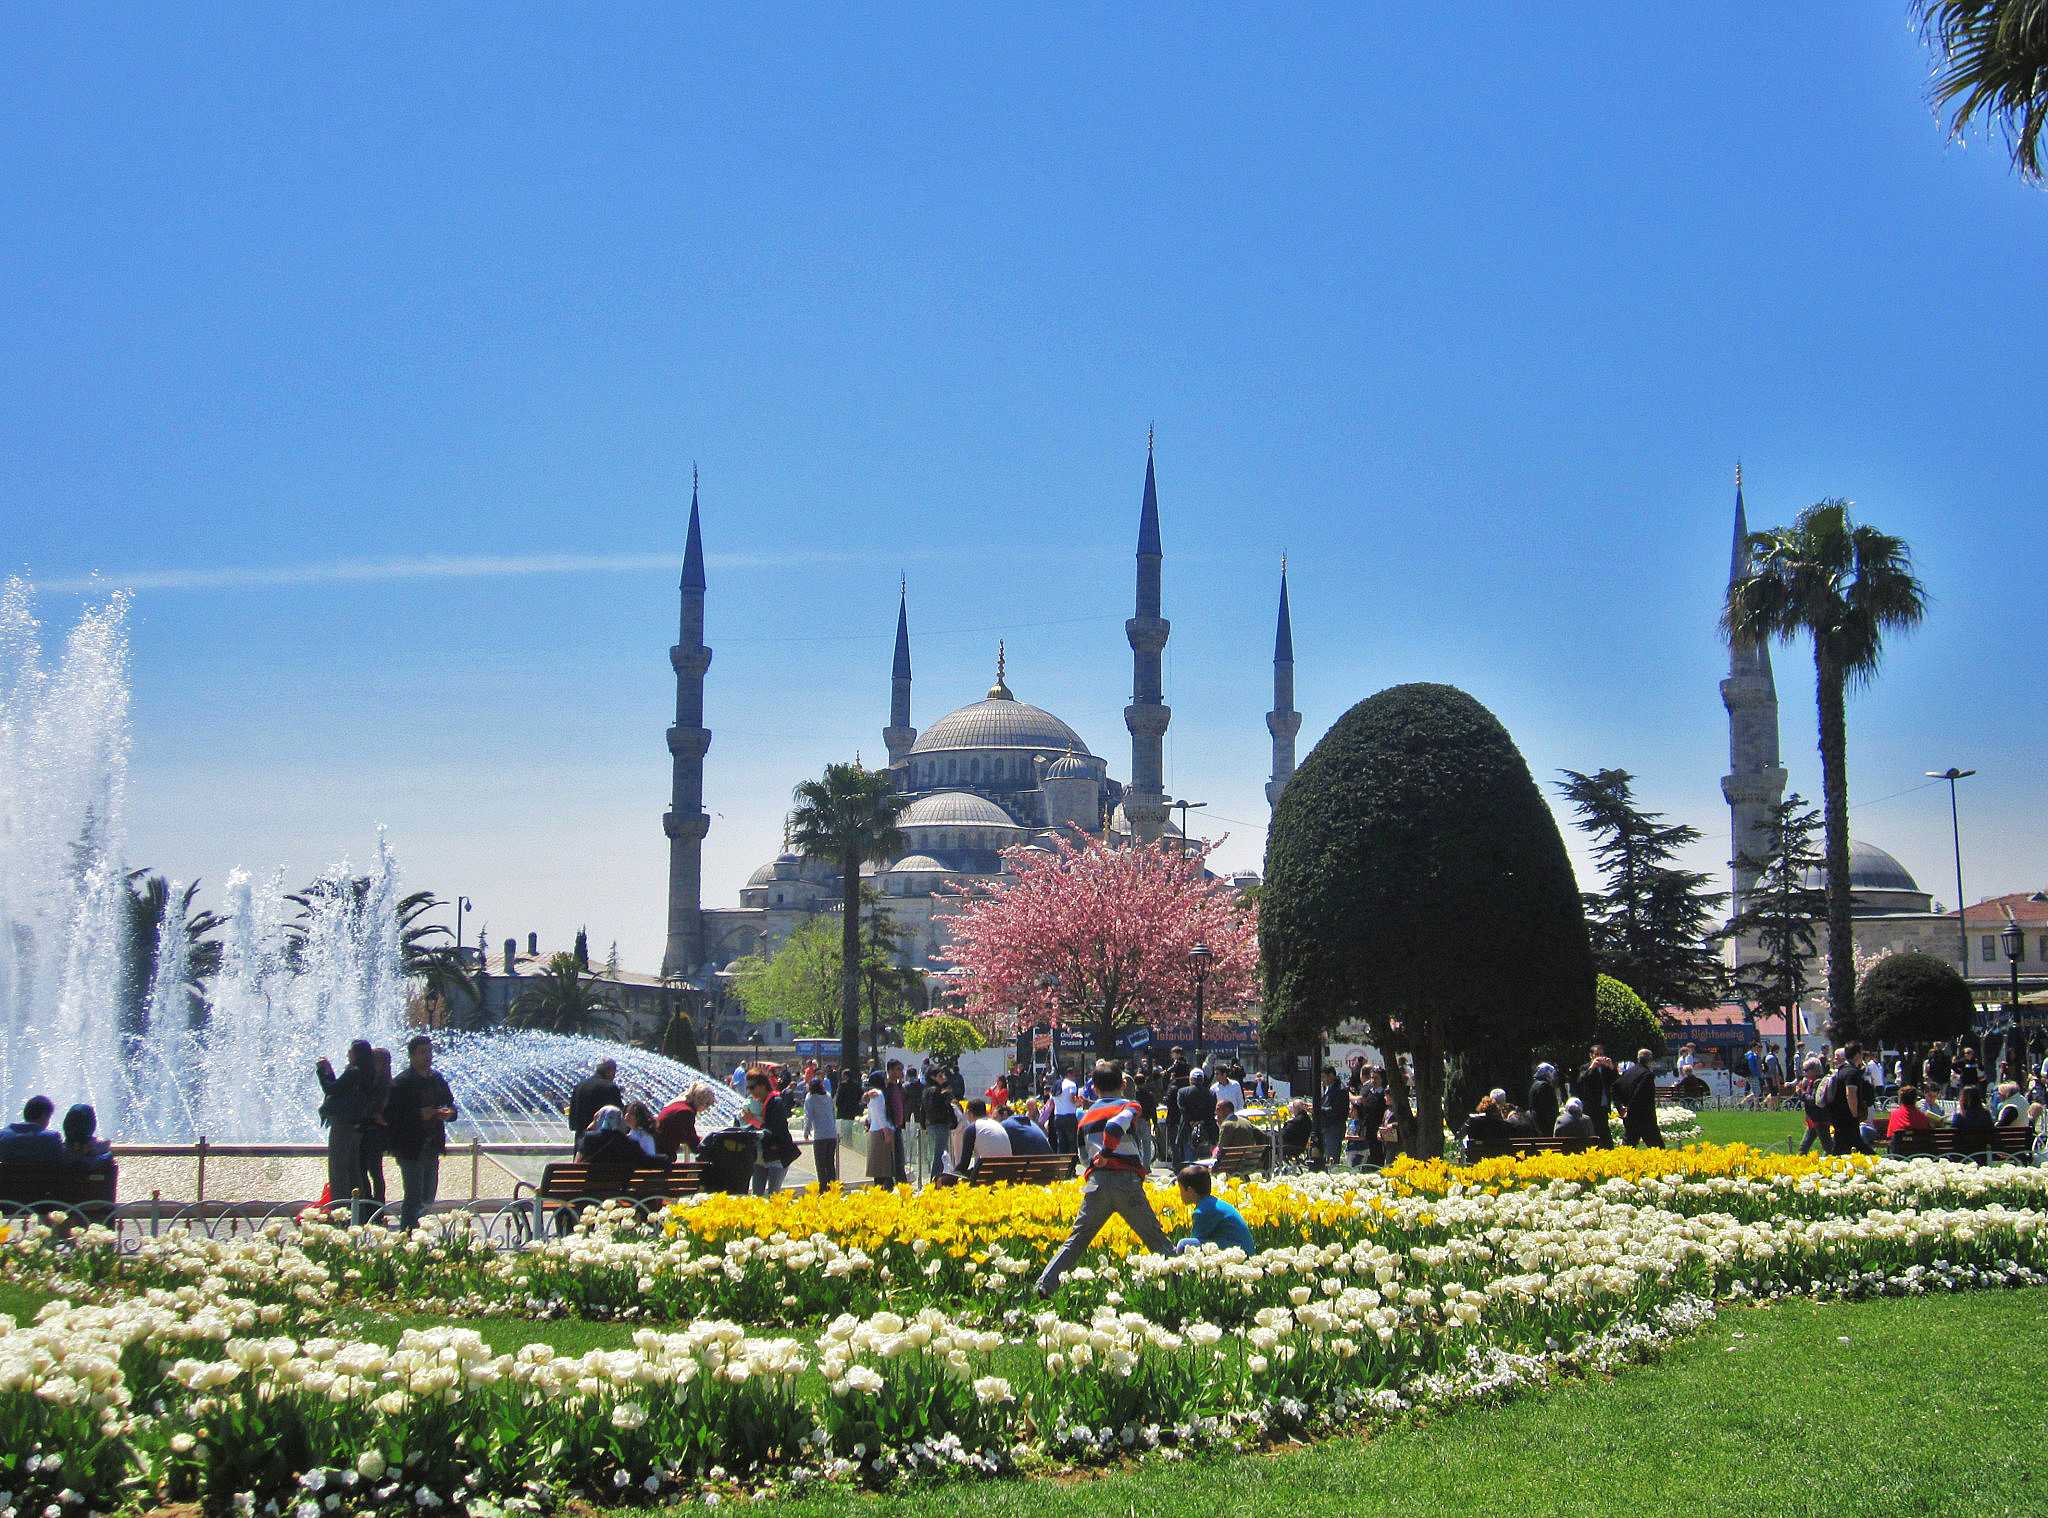 Площадь султанахмет — место, которое не пропустит ни один турист